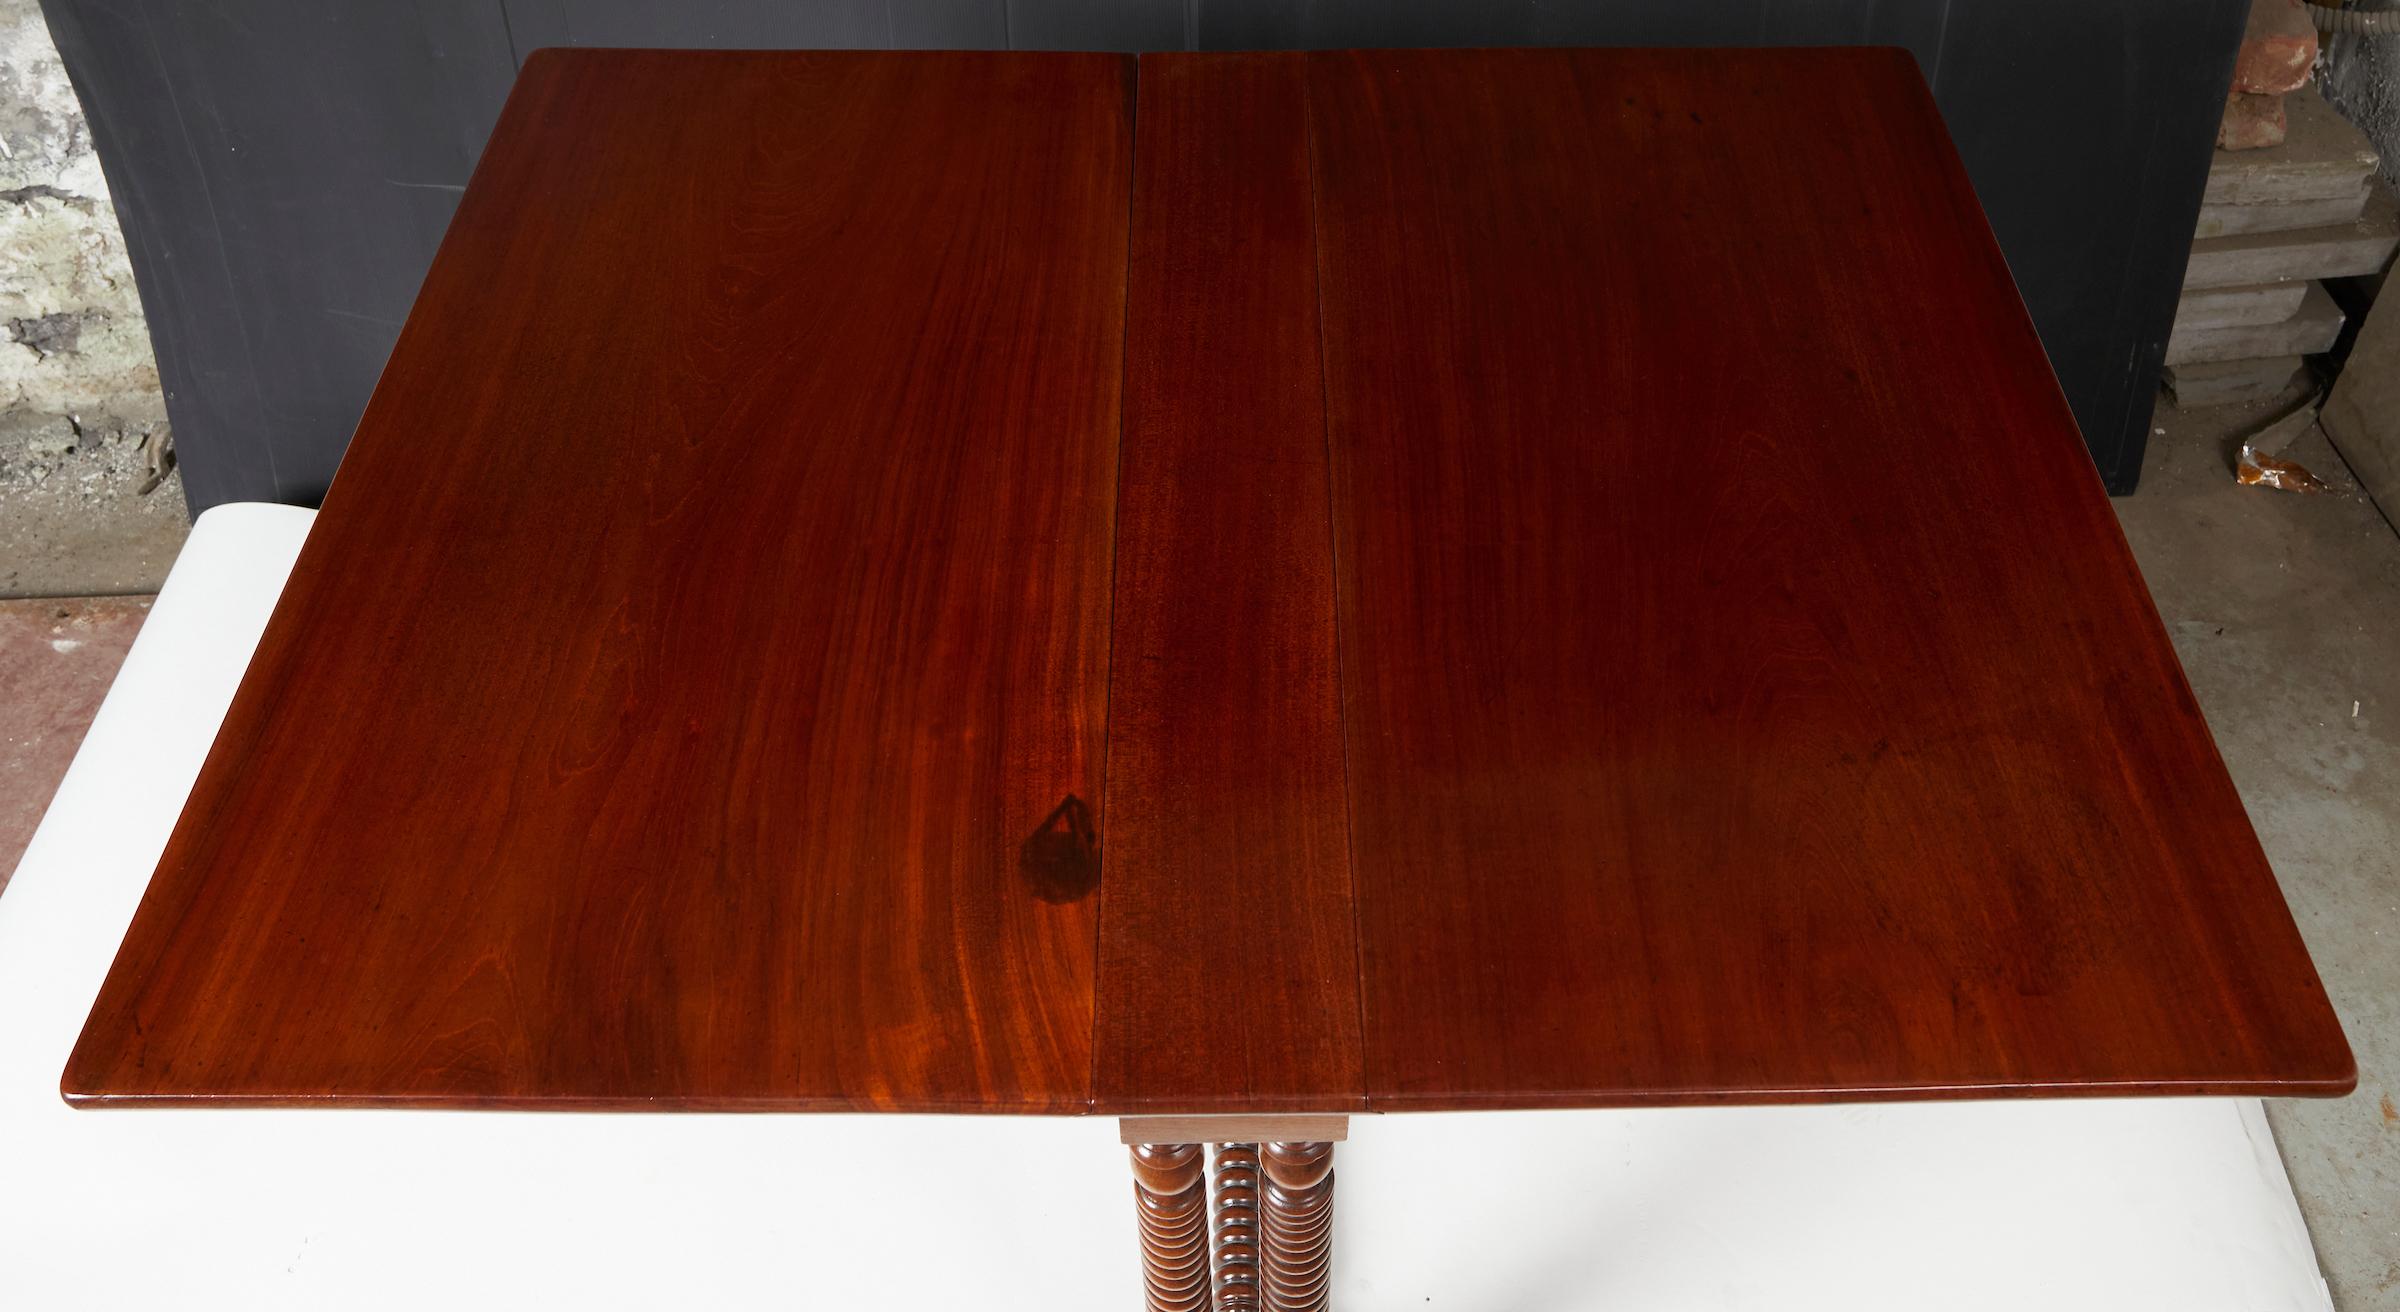 Französischer Tisch aus der Louis-Philippe-Periode, ausgestattet mit einem Fallblattsystem. 
Das Dach ohne Fensterläden besteht aus zwei überhängenden Brettern. Die gesamte Decke ist aus sogenanntem 